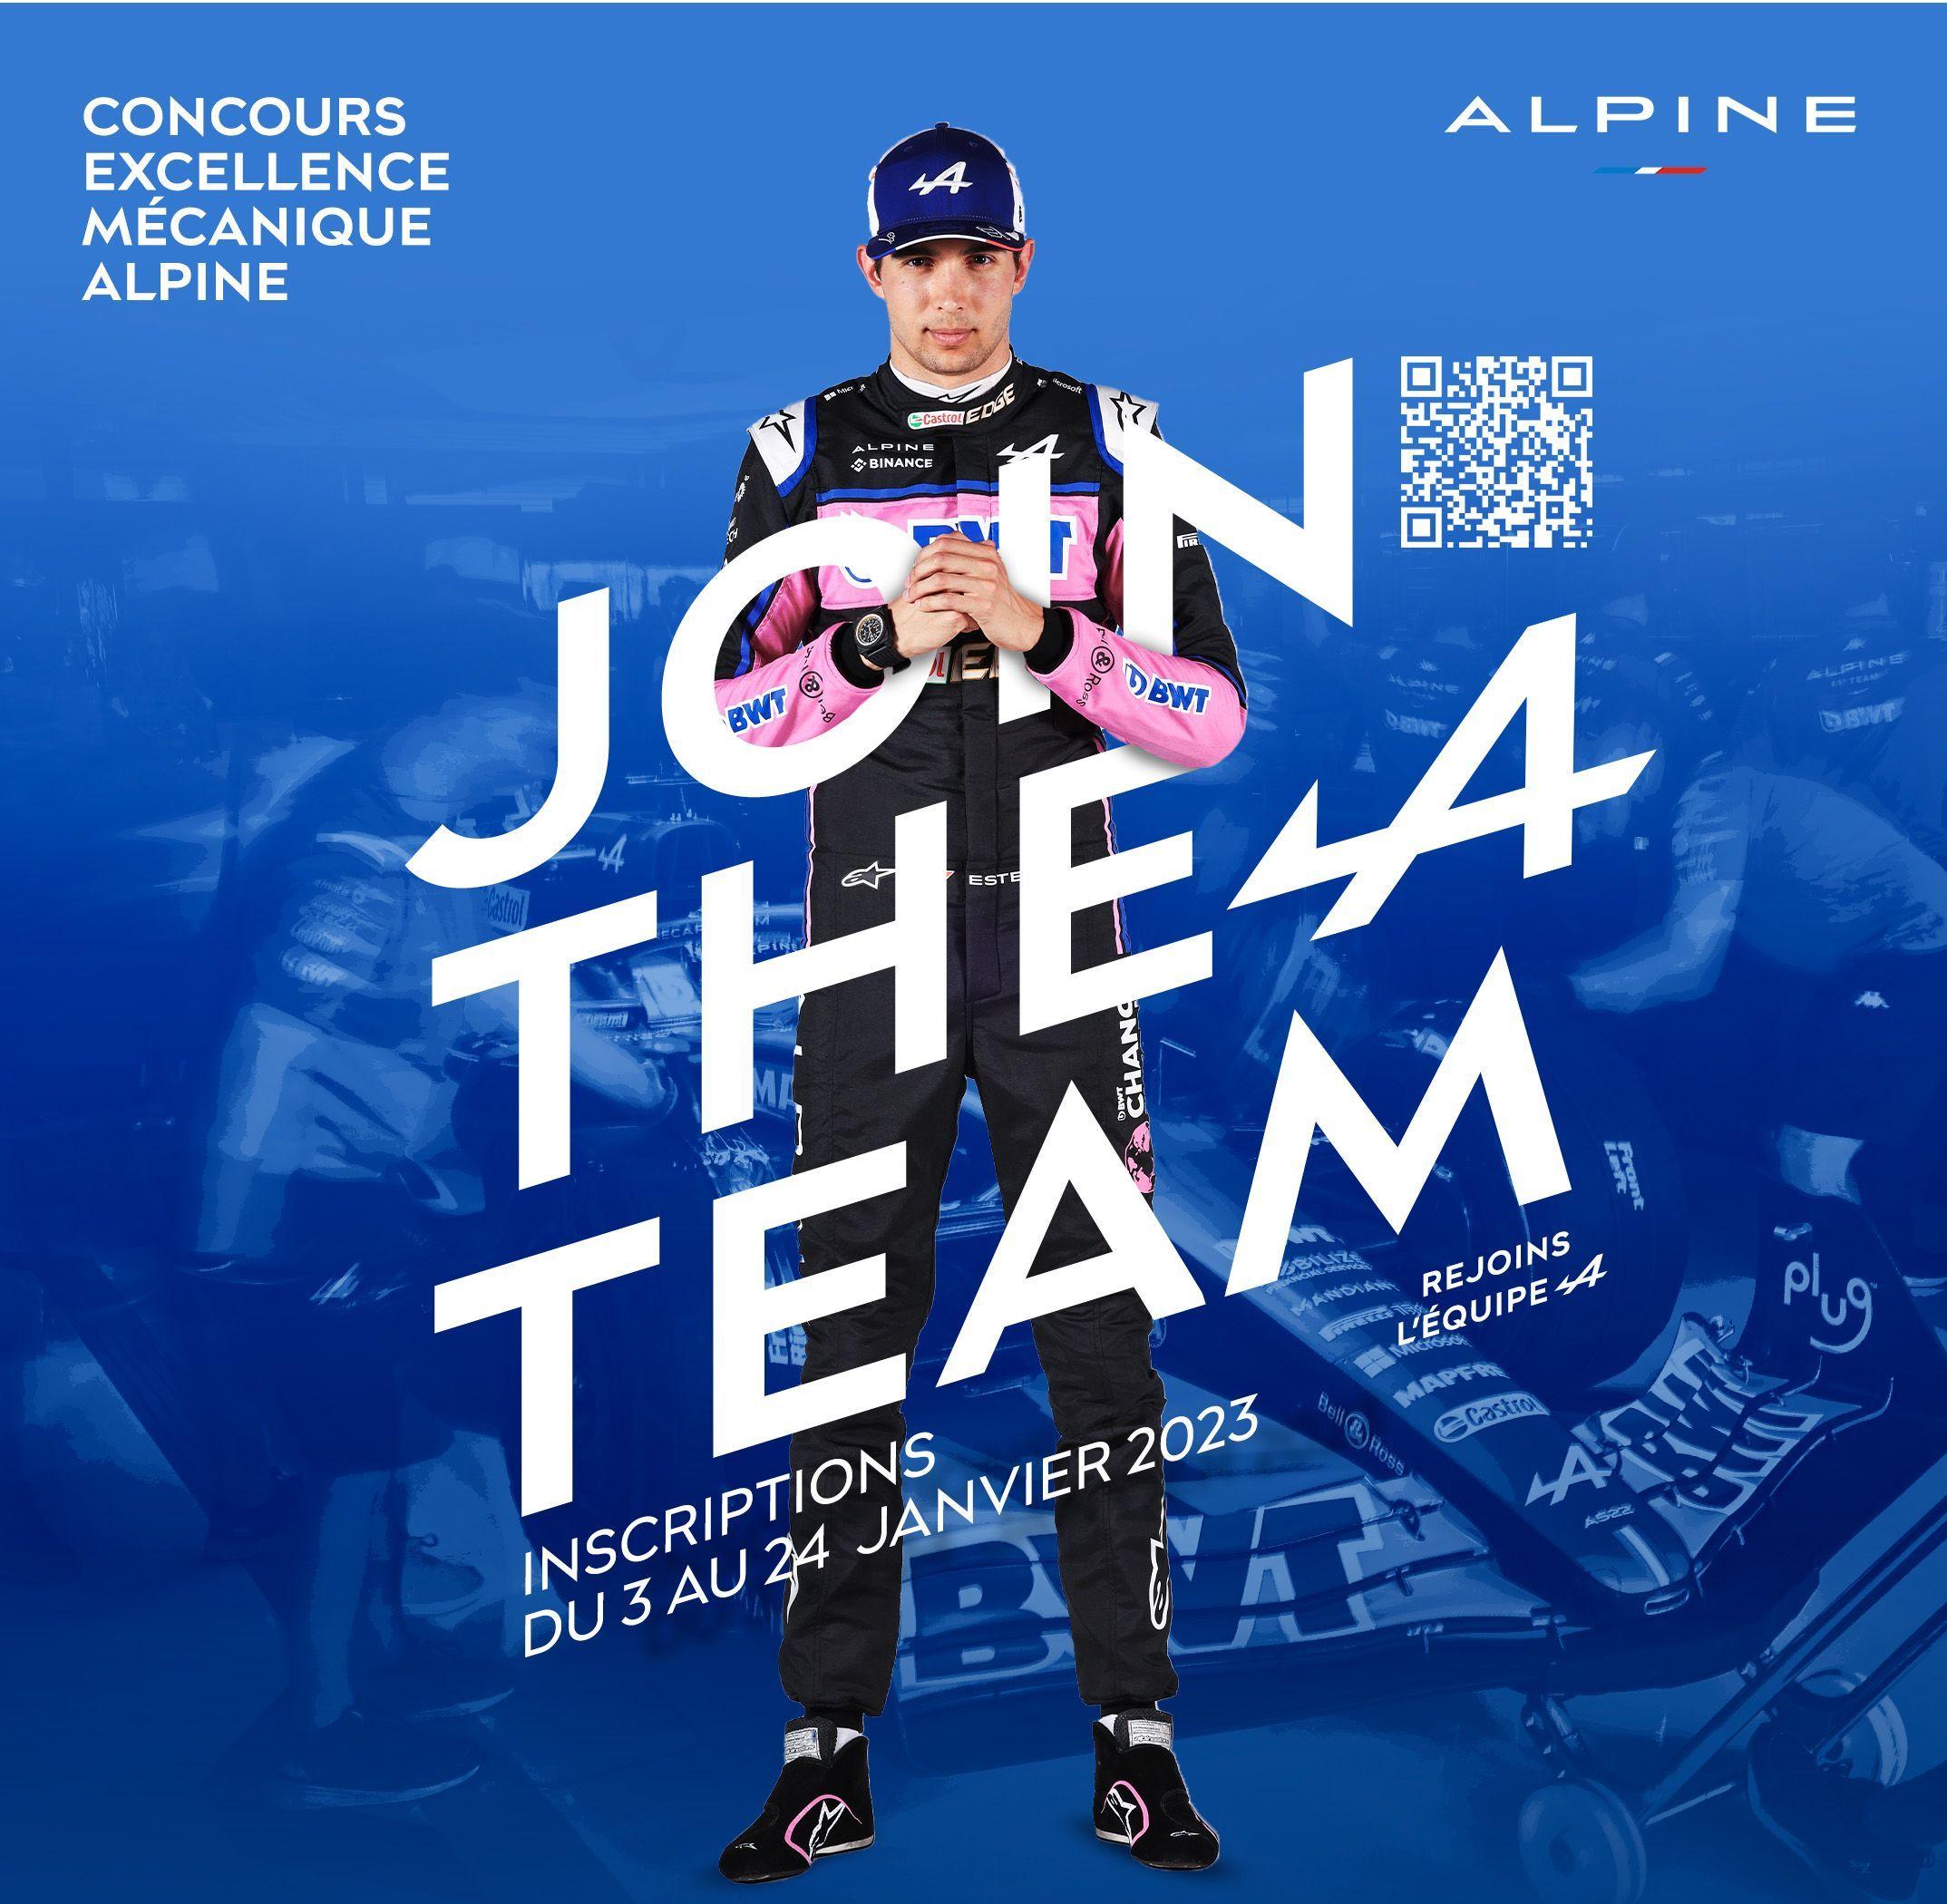 Affiche de promotion concours mécanique Alpine 2023